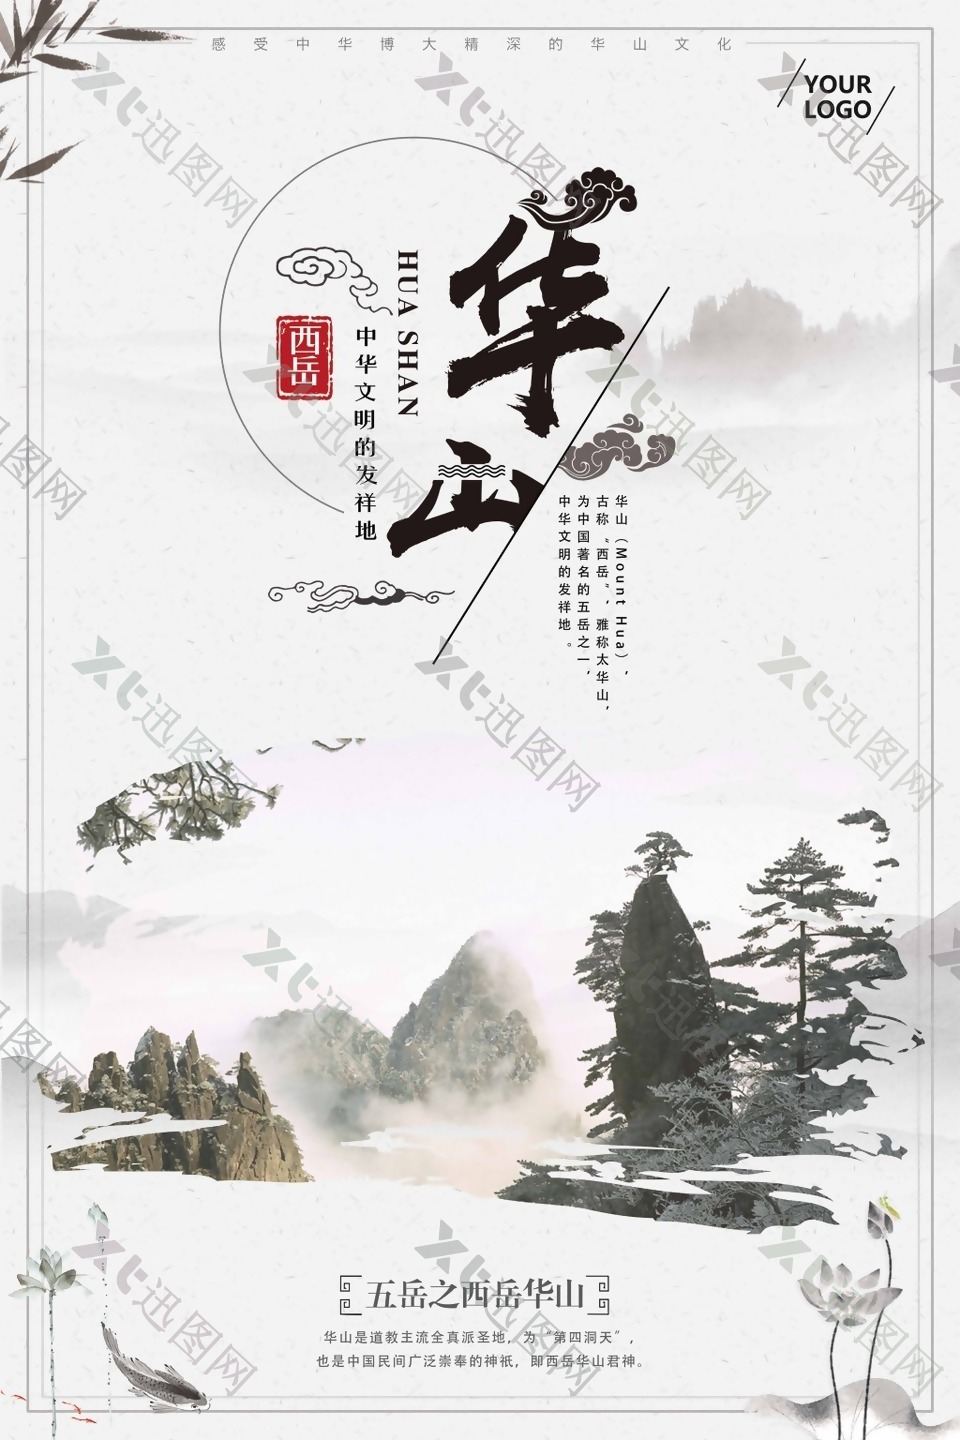 西岳华山山峰爬山游玩中国风海报